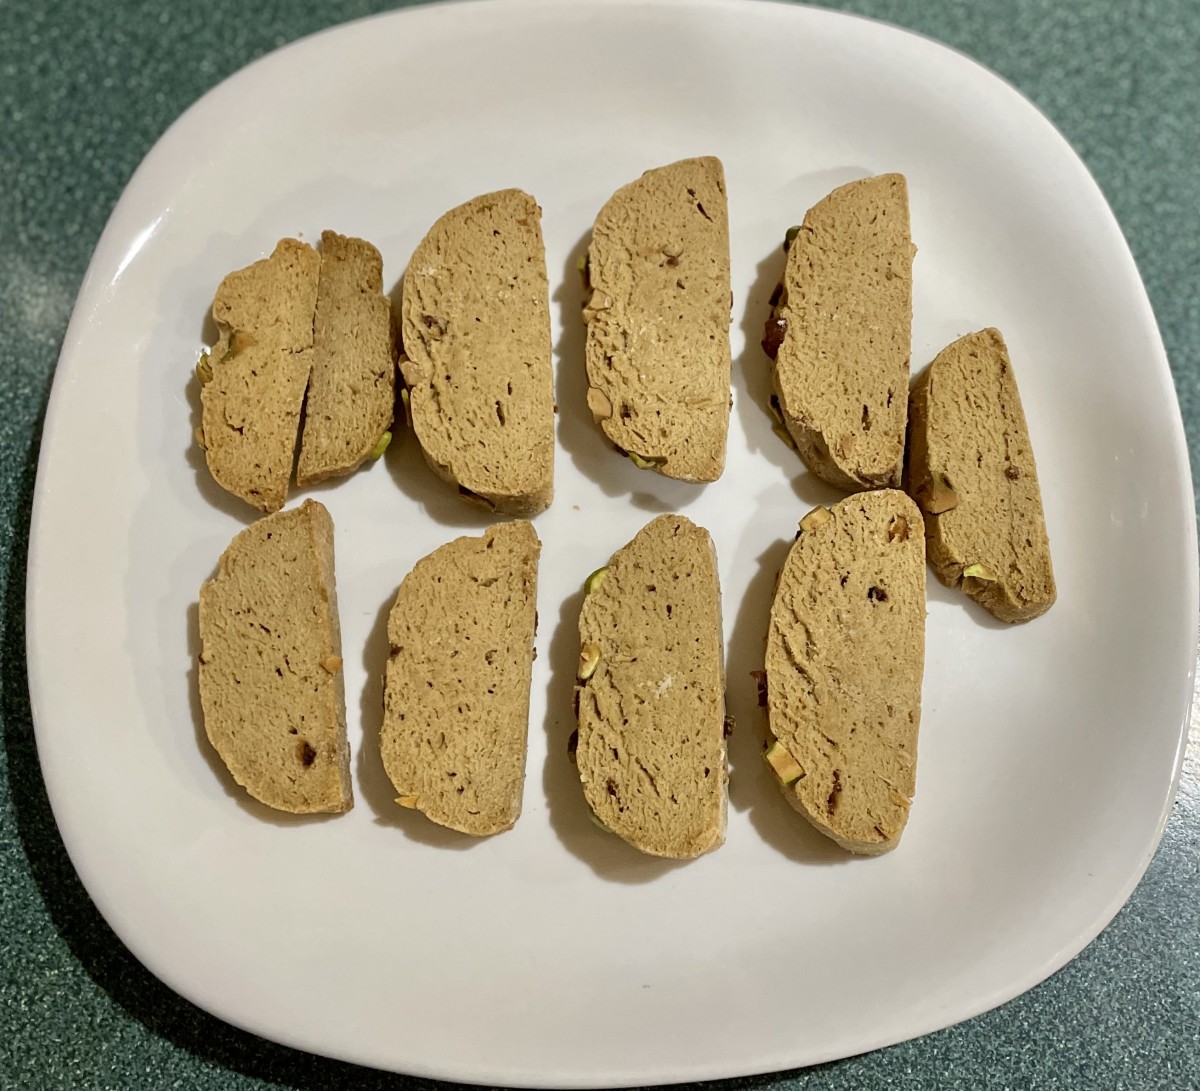 almond-dates-wheat-pistachio-no-sugar-biscotti